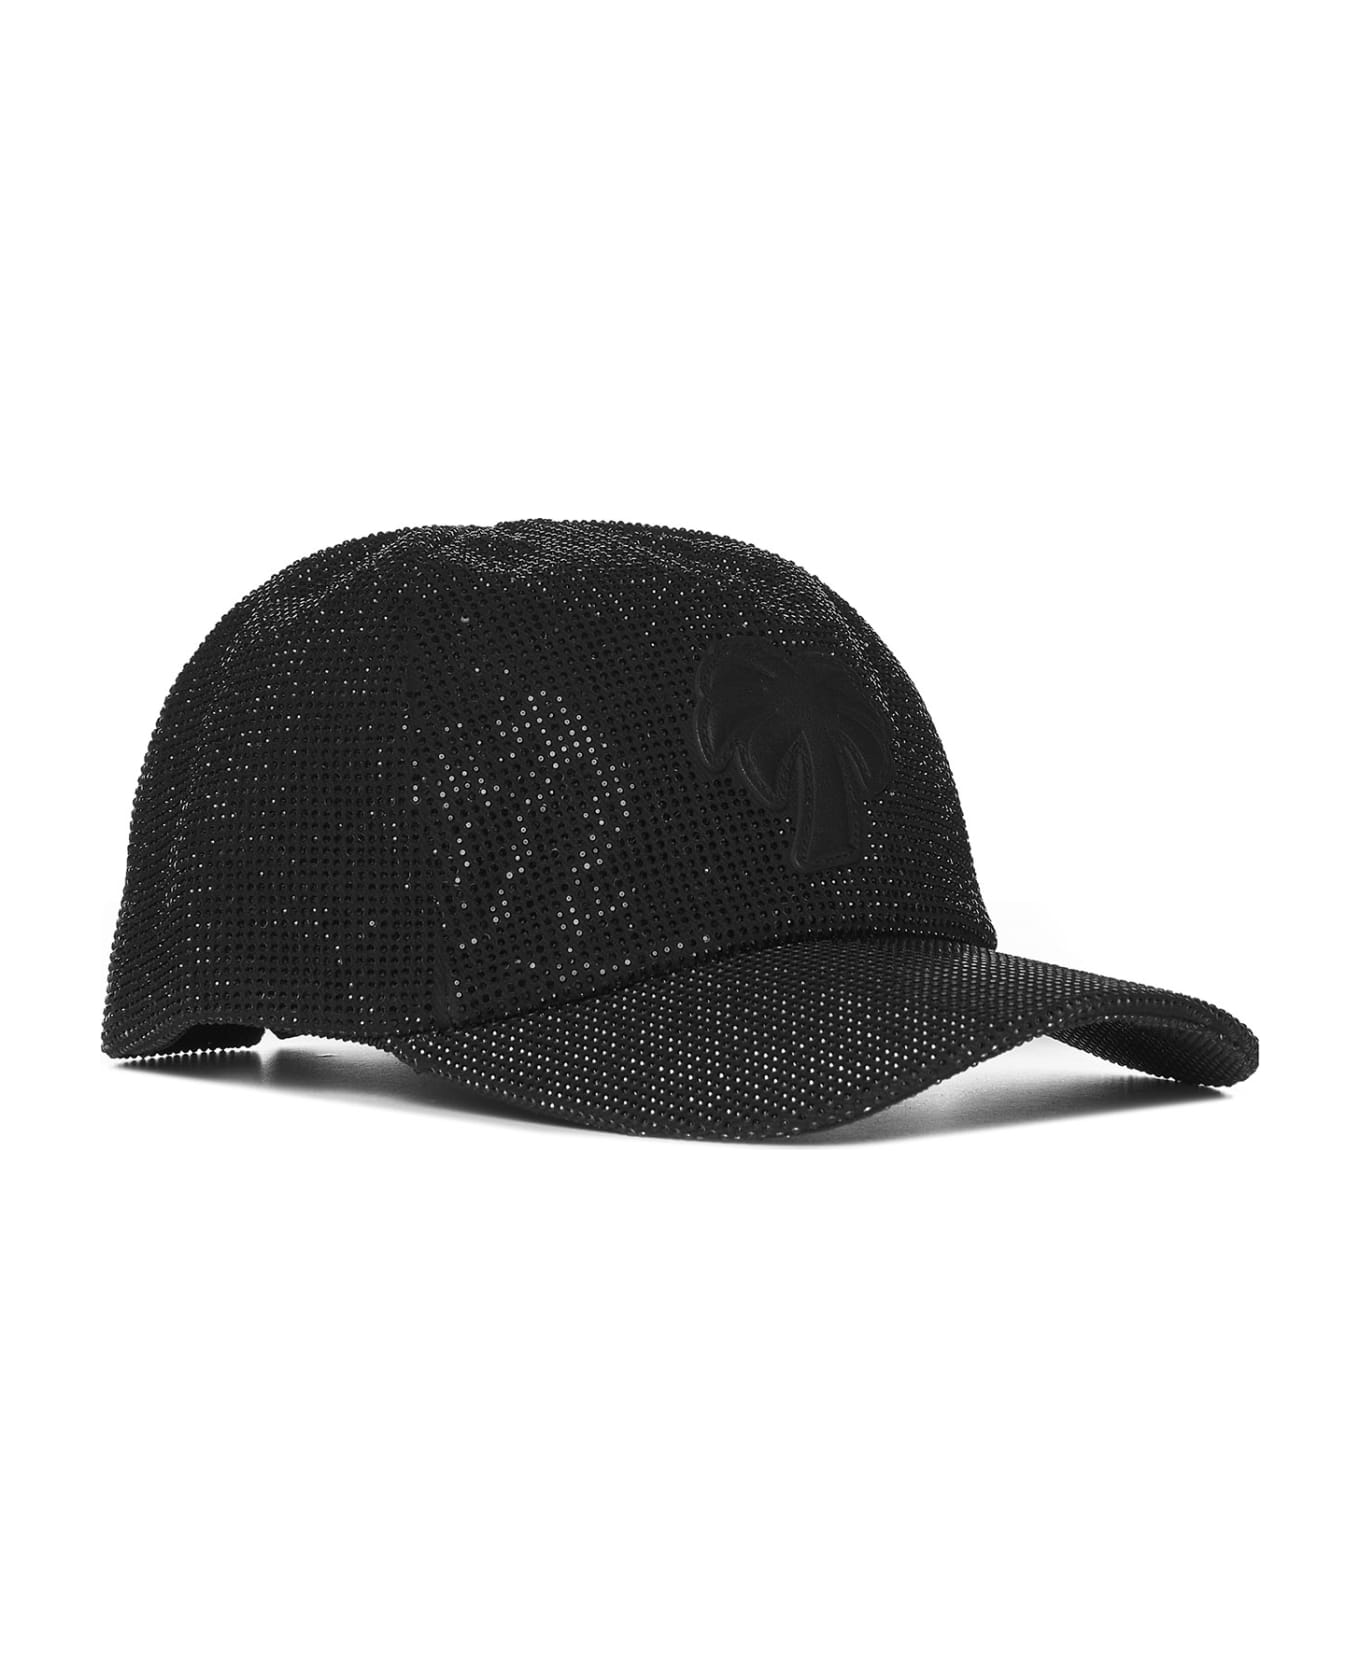 Palm Angels Rhinestone Baseball Cap - Black 帽子